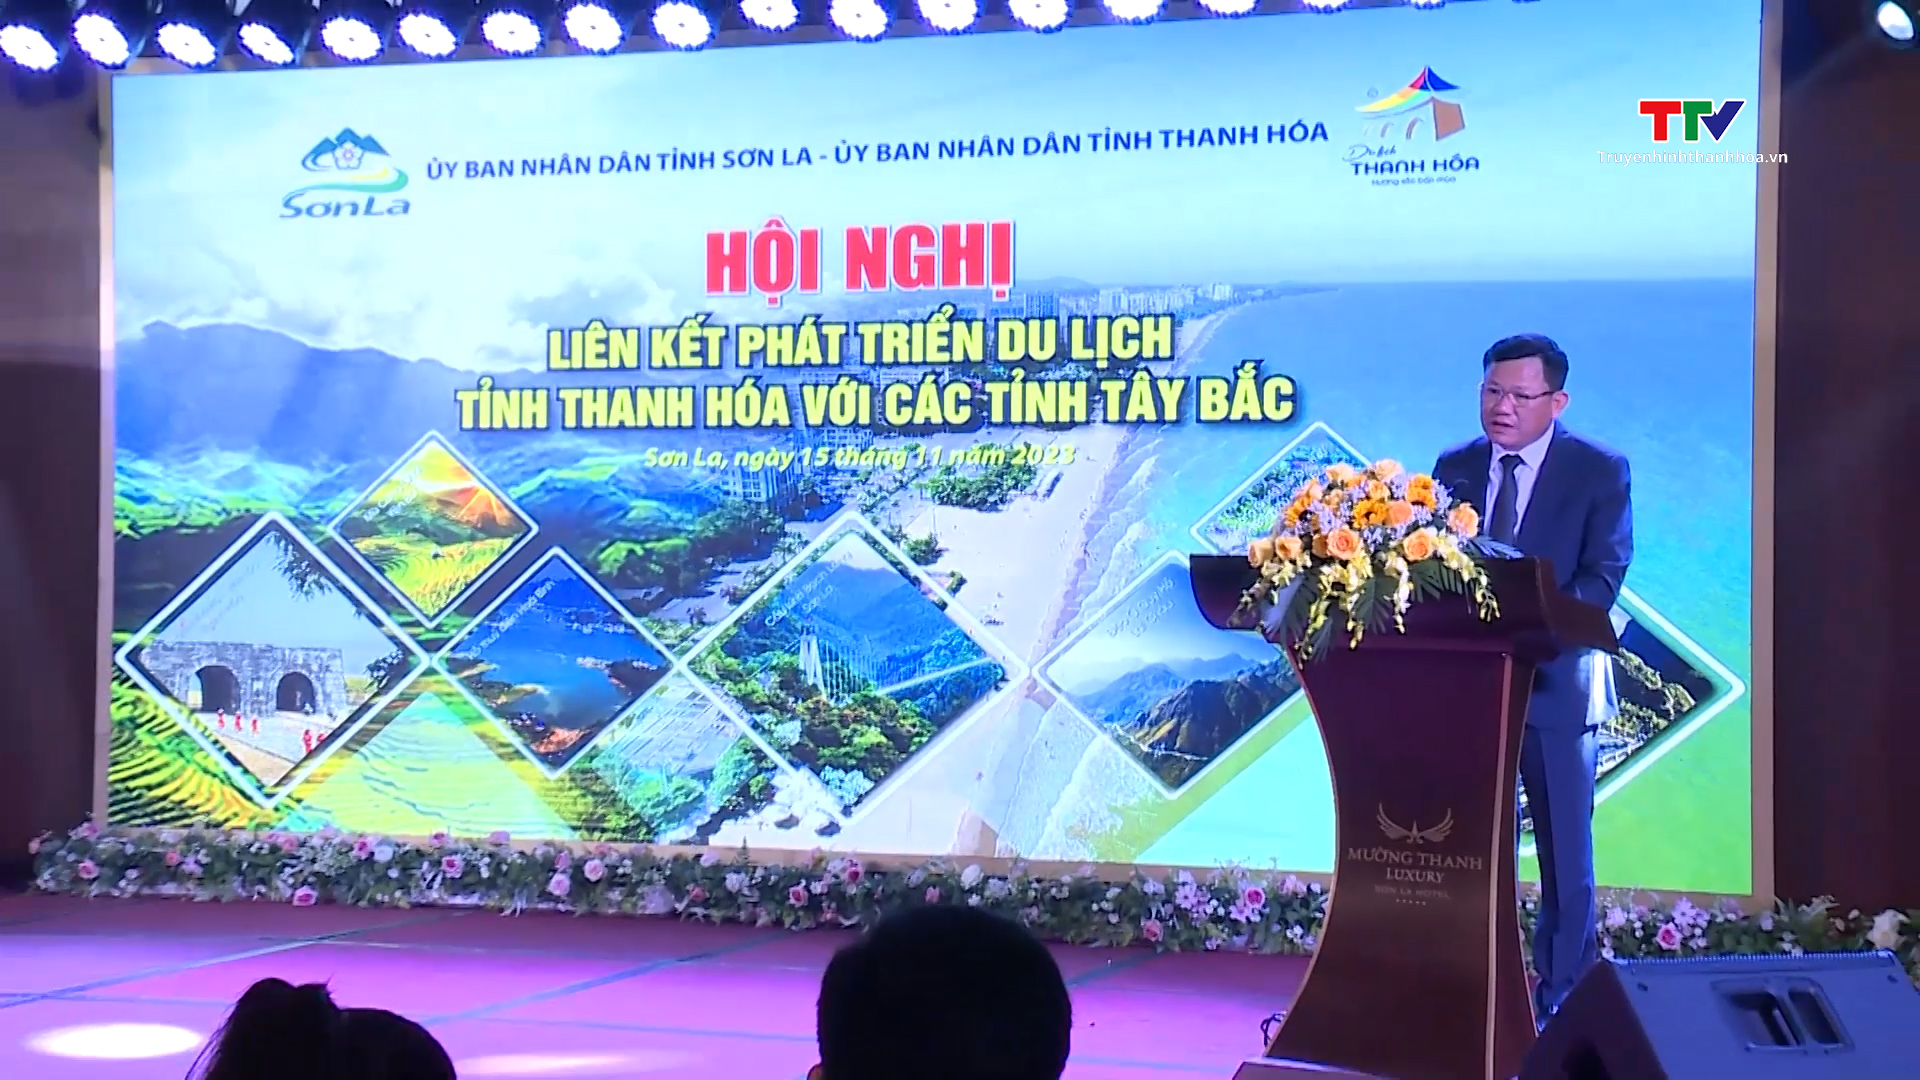 Hội nghị liên kết phát triển du lịch tỉnh Thanh Hoá với các tỉnh Tây Bắc- Ảnh 1.